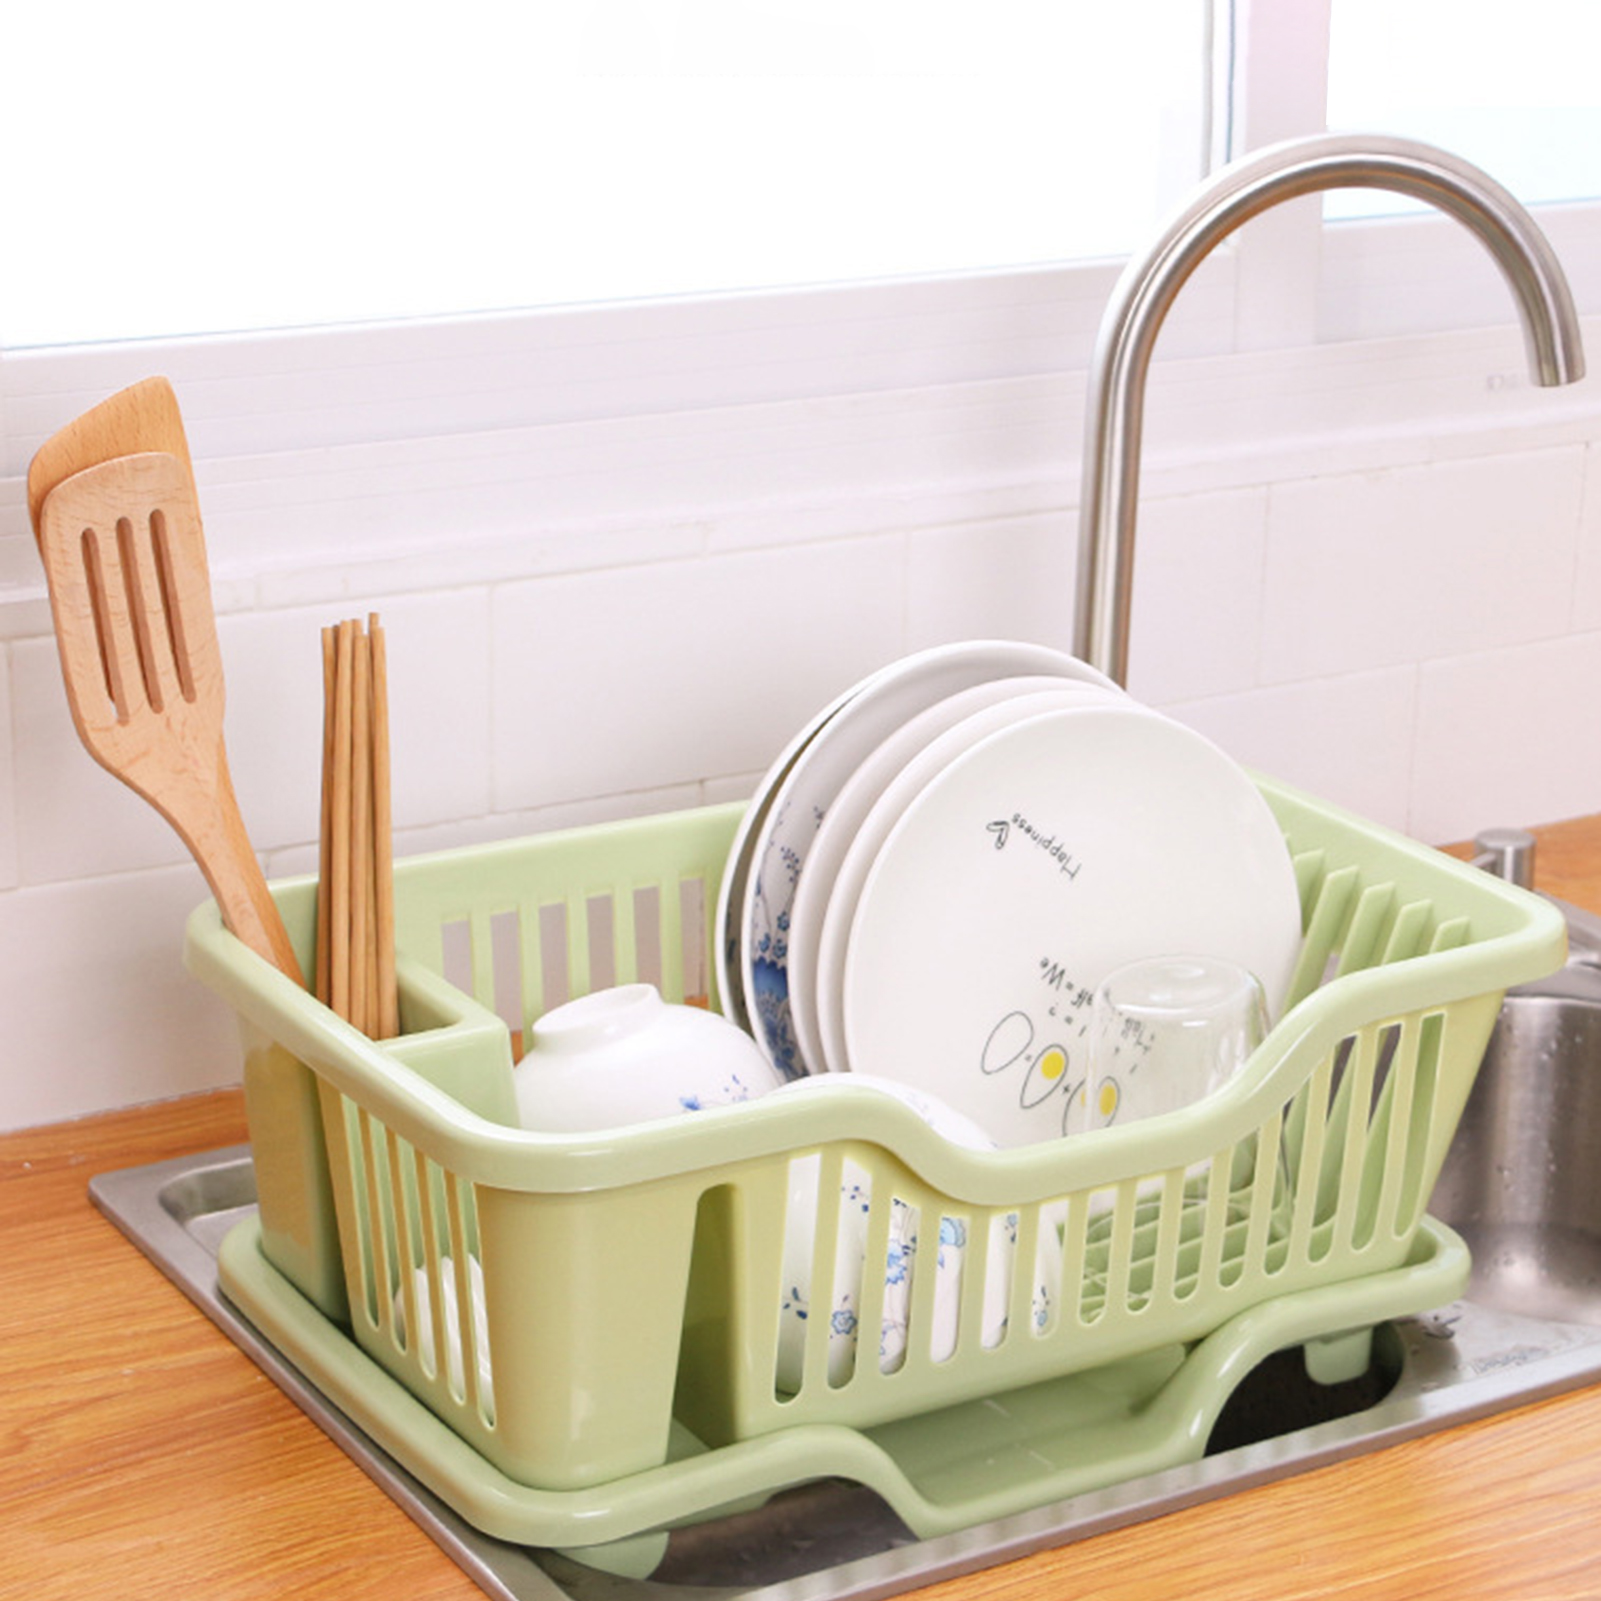 vier-de-cuisine-T1-au-dessus-de-l-vier-vaisselle-accessoire-pour-la-maison